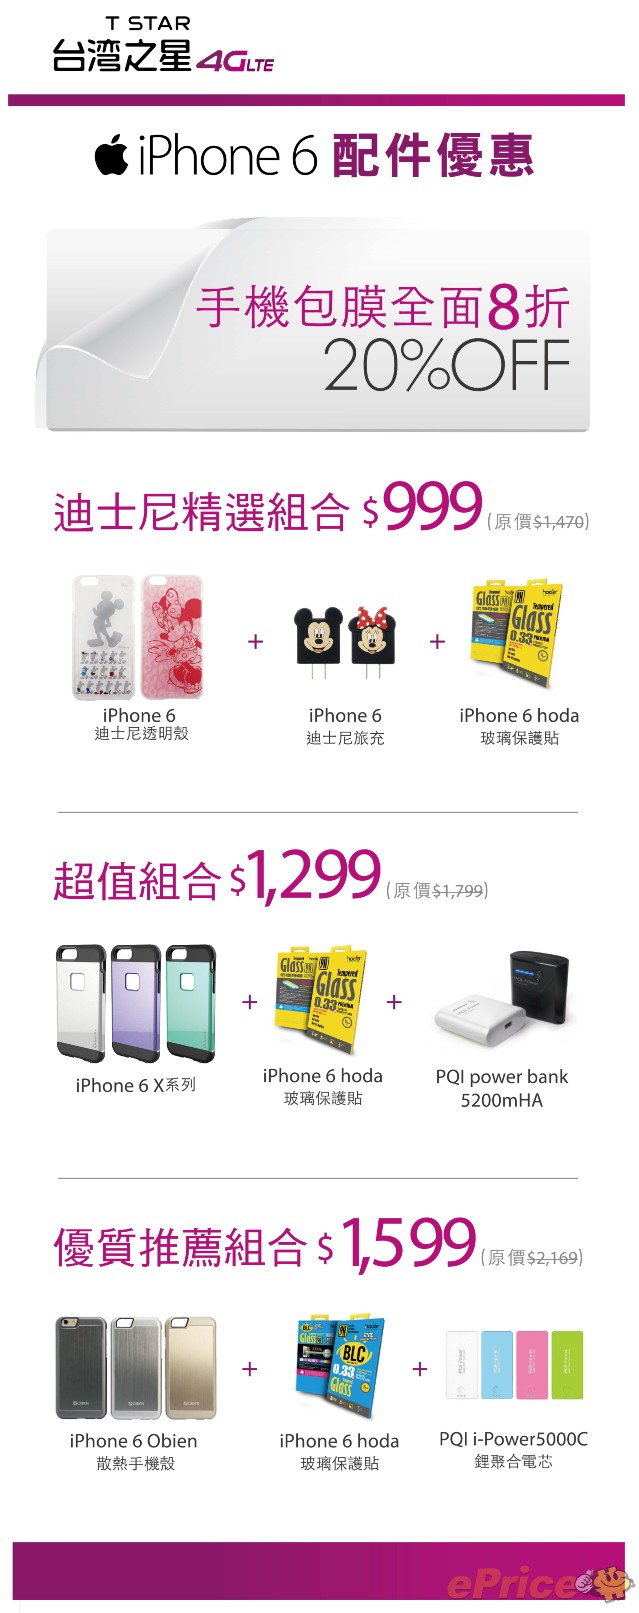 台灣之星iPhone 6首賣會配件專屬組合.jpg